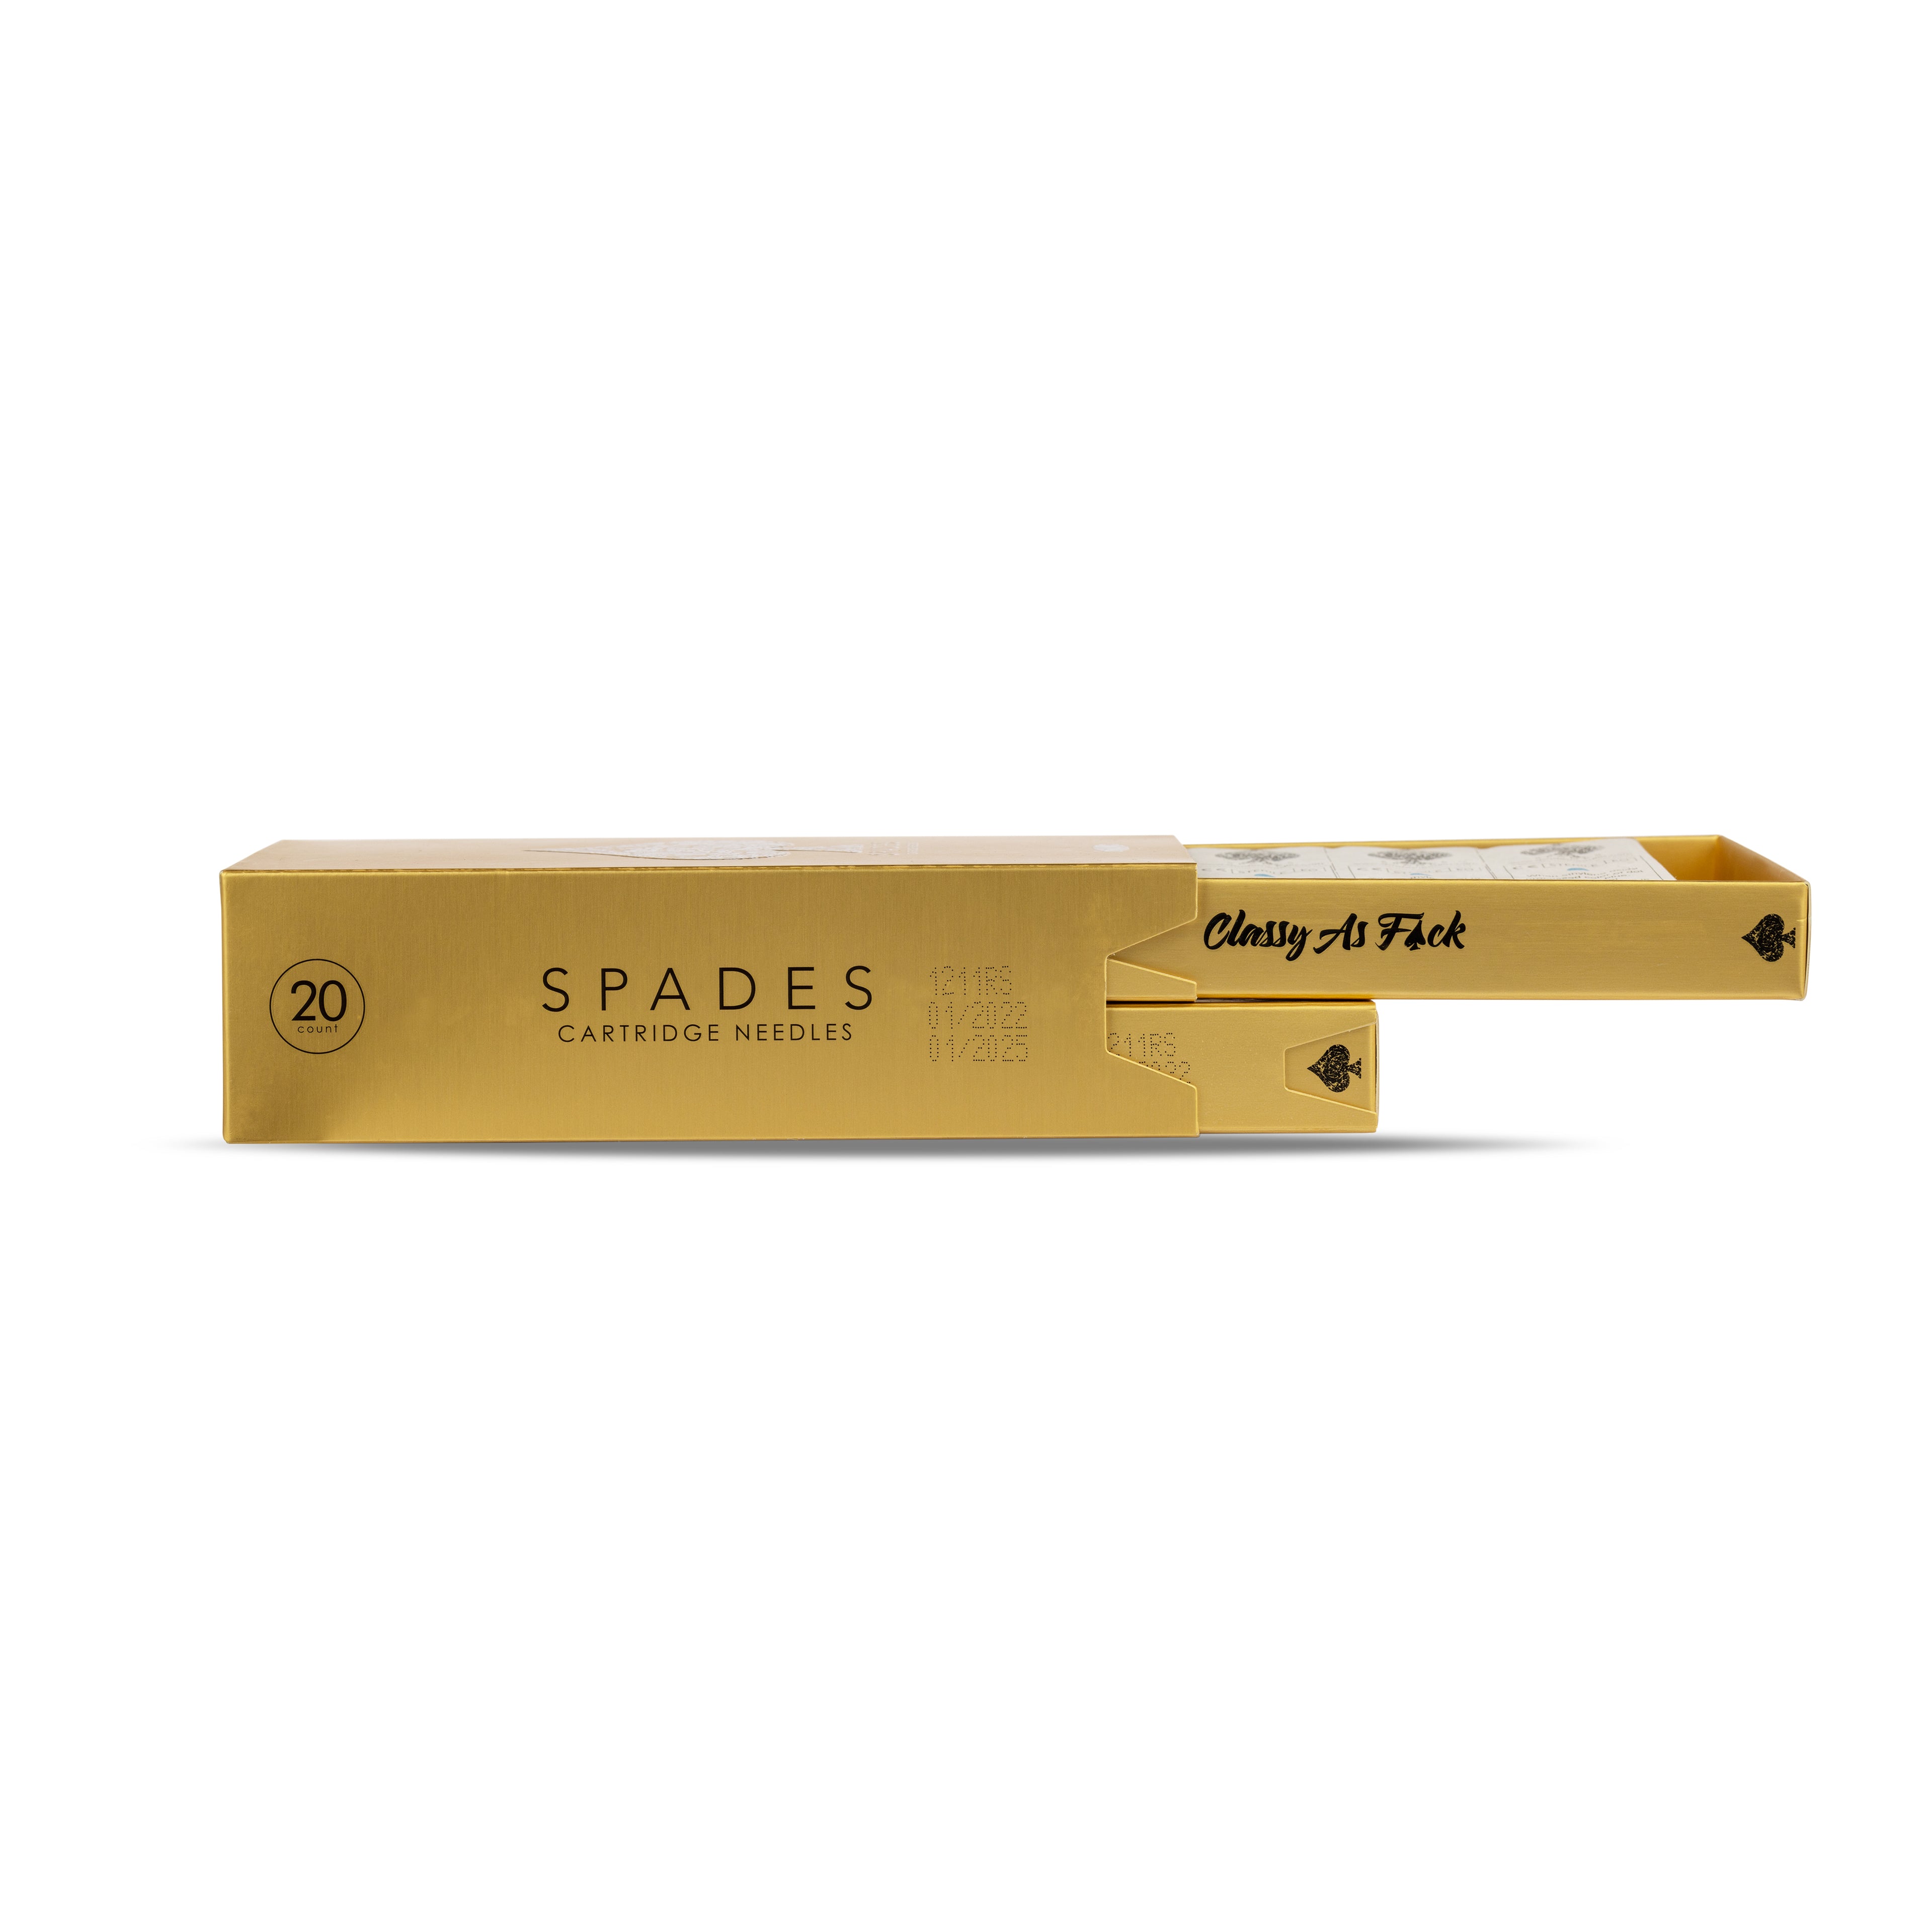 Spades X Dynamic #12/0.35mm Tattoo Cartridge Needles